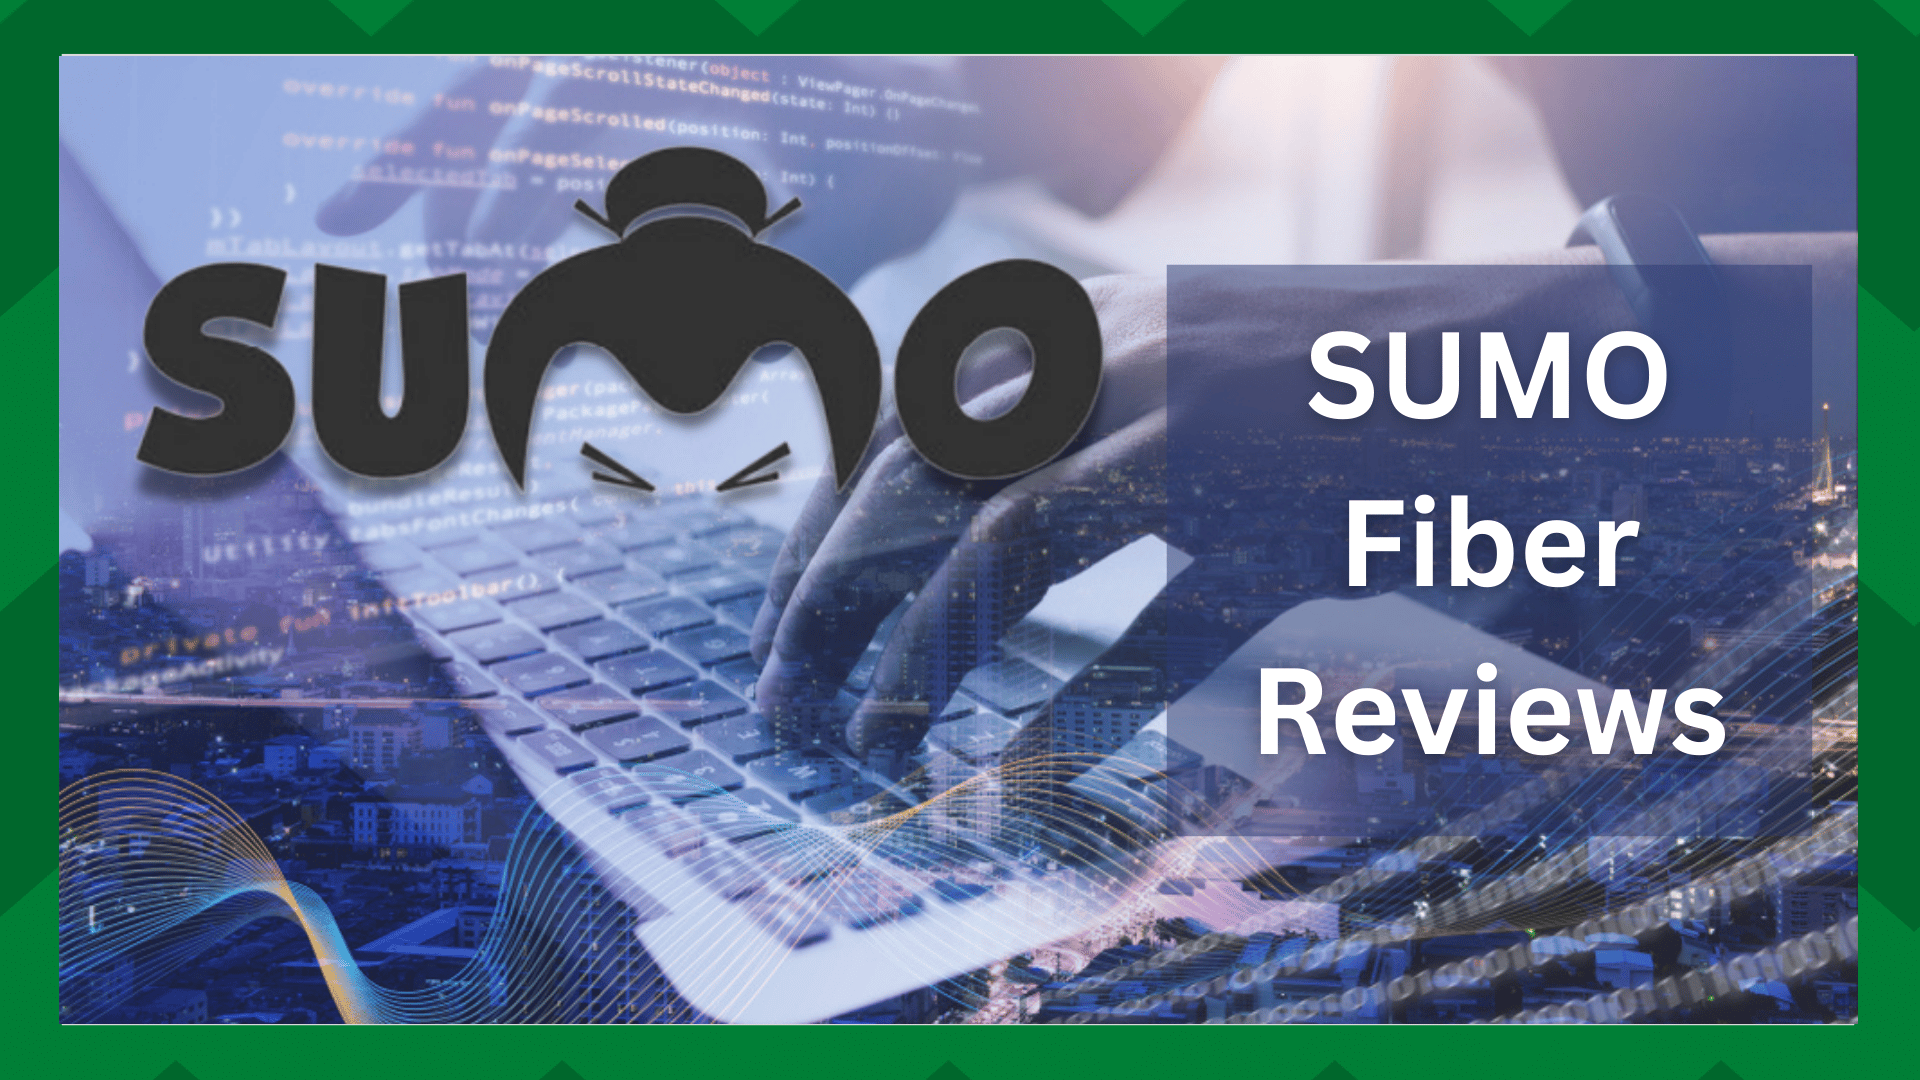 SUMO Fiber Reviews